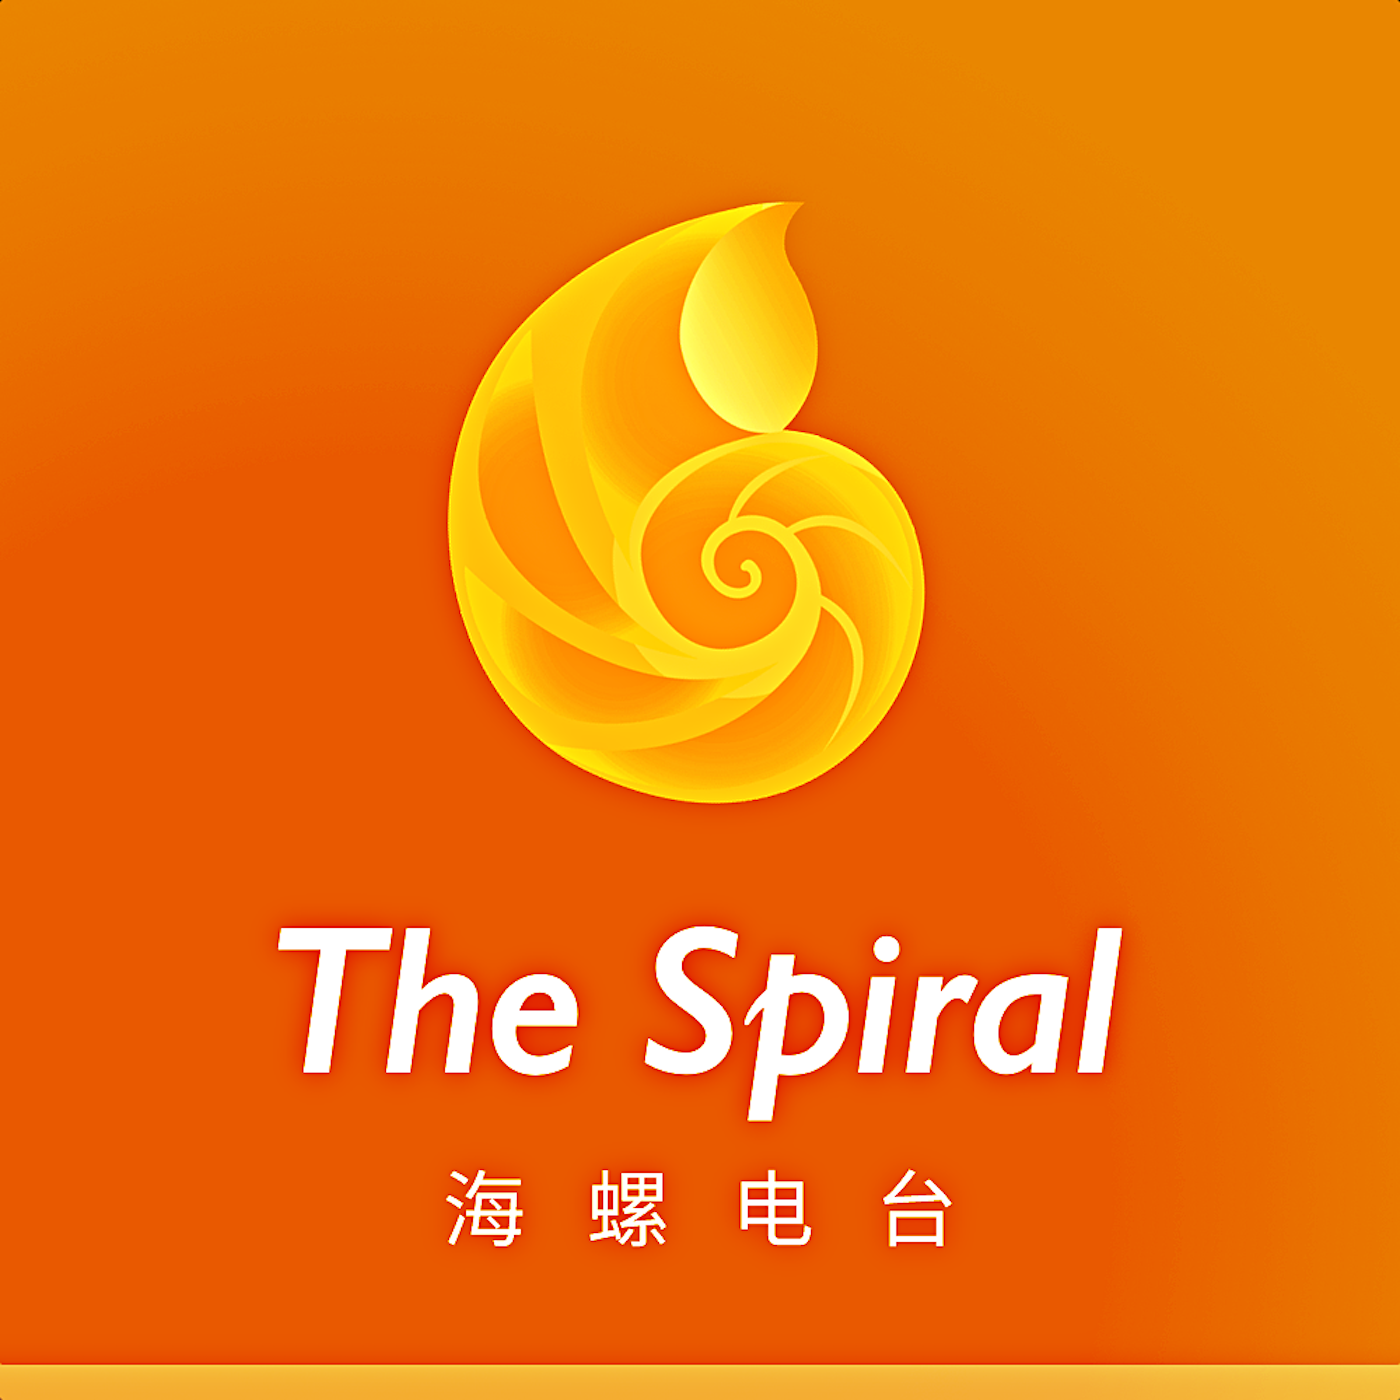 海螺电台 | The Spiral